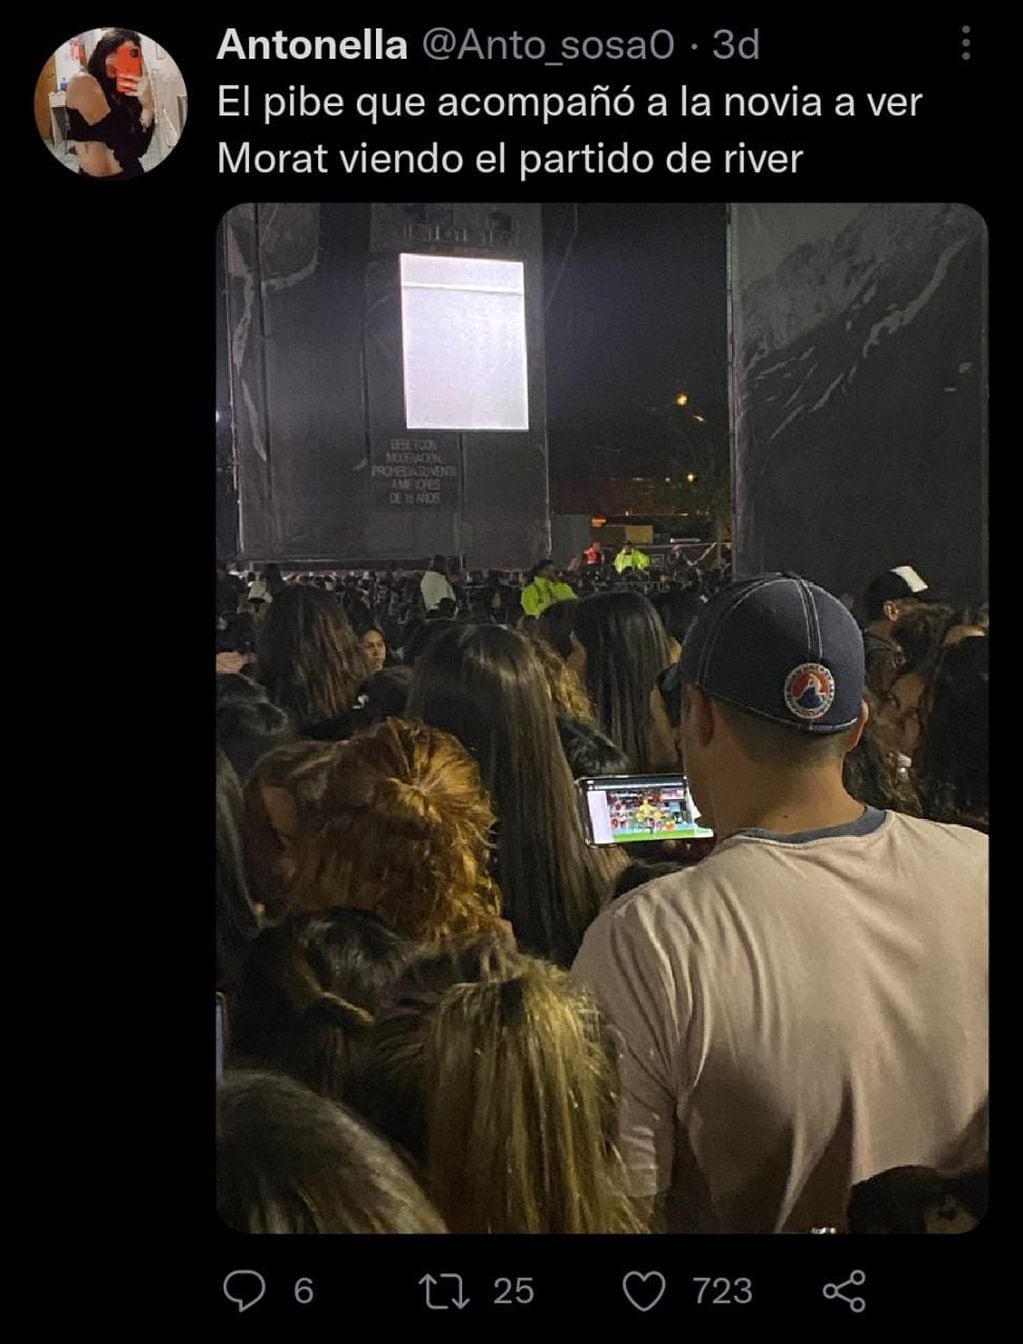 Acompañó a su novia al recital de Morat, se puso a ver un partido de fútbol y se hizo viral.